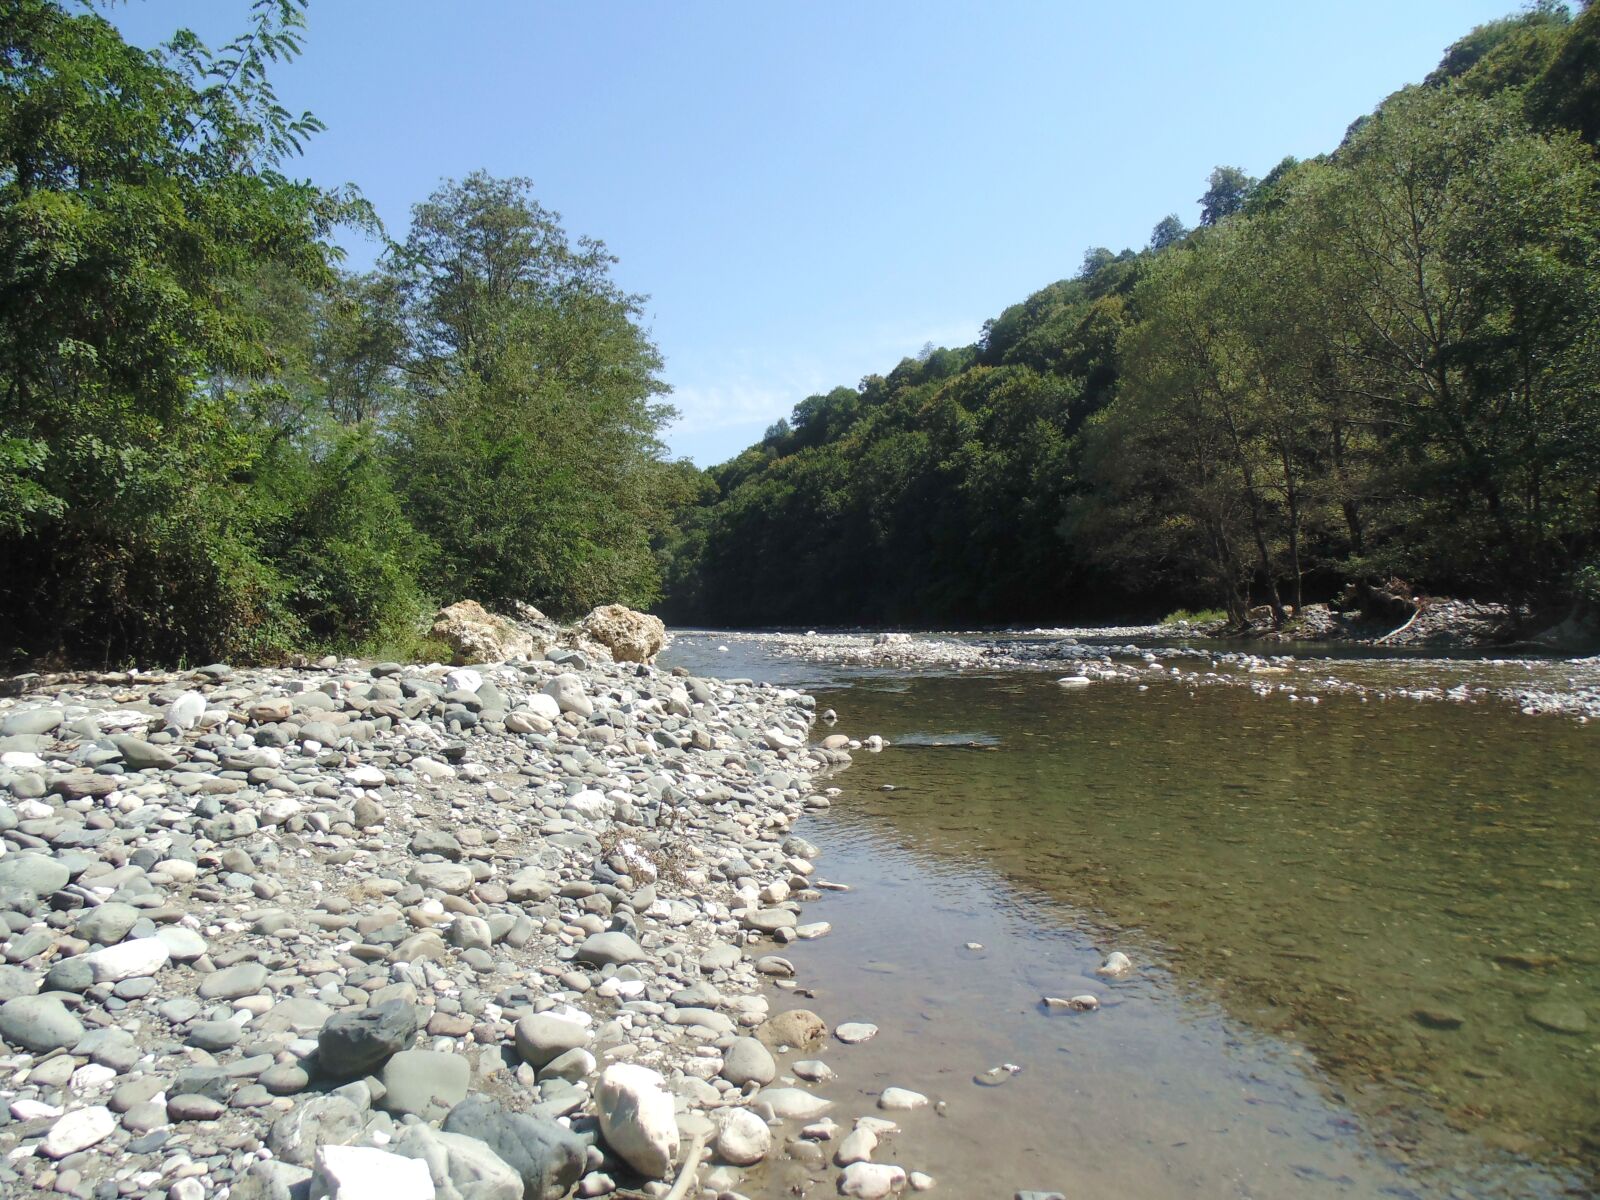 Sony DSC-H100 sample photo. Abkhazia, kamana, river photography